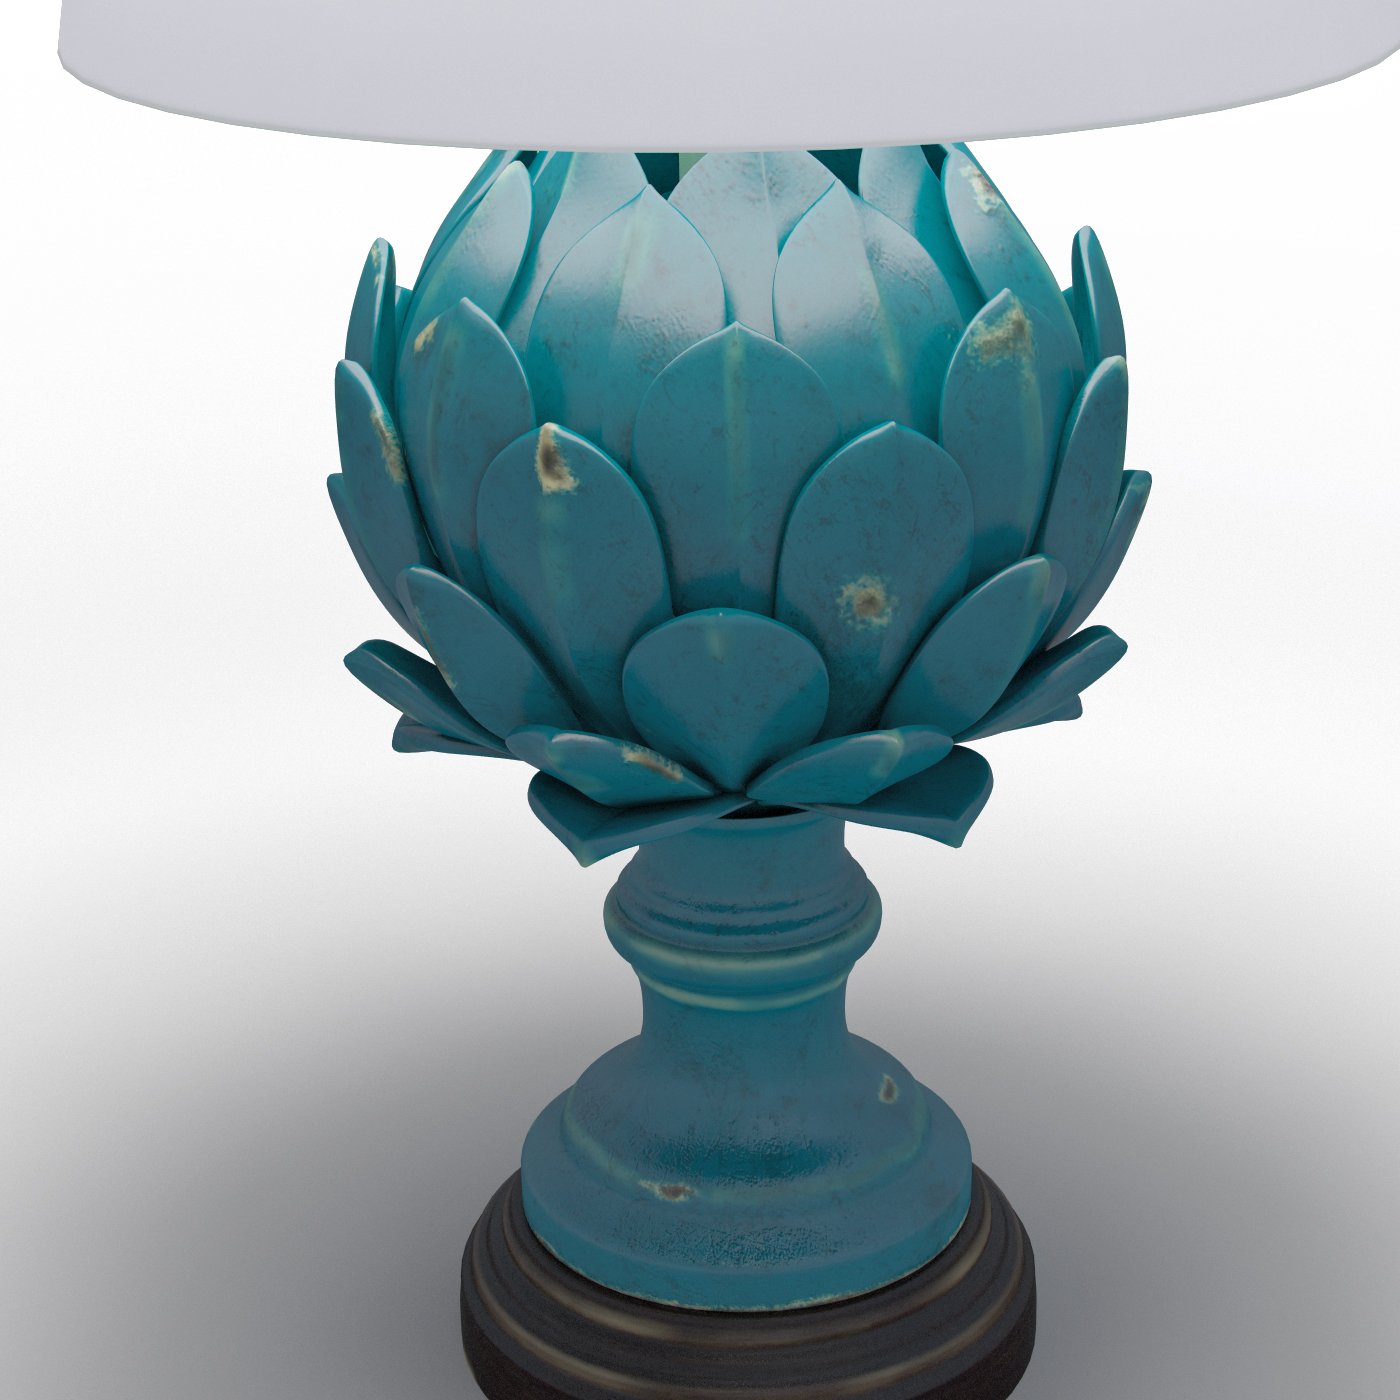 Cynara White Table Lamp